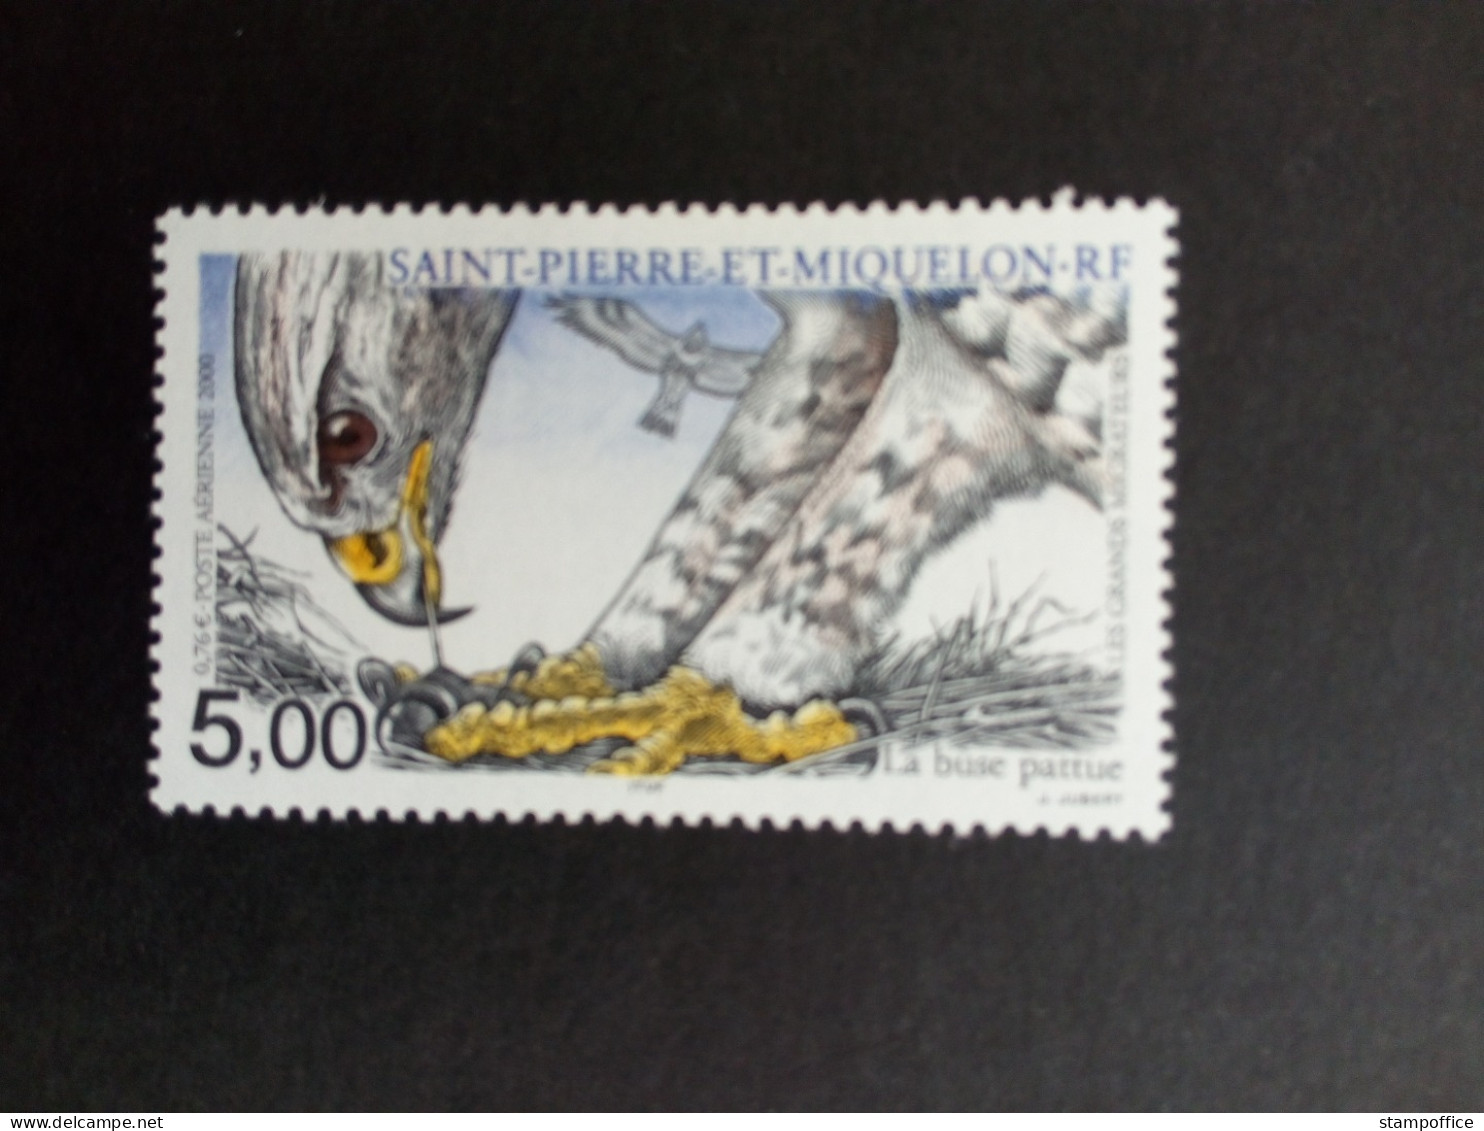 SAINT-PIERRE ET MIQUELON MI-NR. 821 POSTFRISCH(MINT) ZUGVÖGEL 2000 RAUHFUSSBUSSARD - Unused Stamps